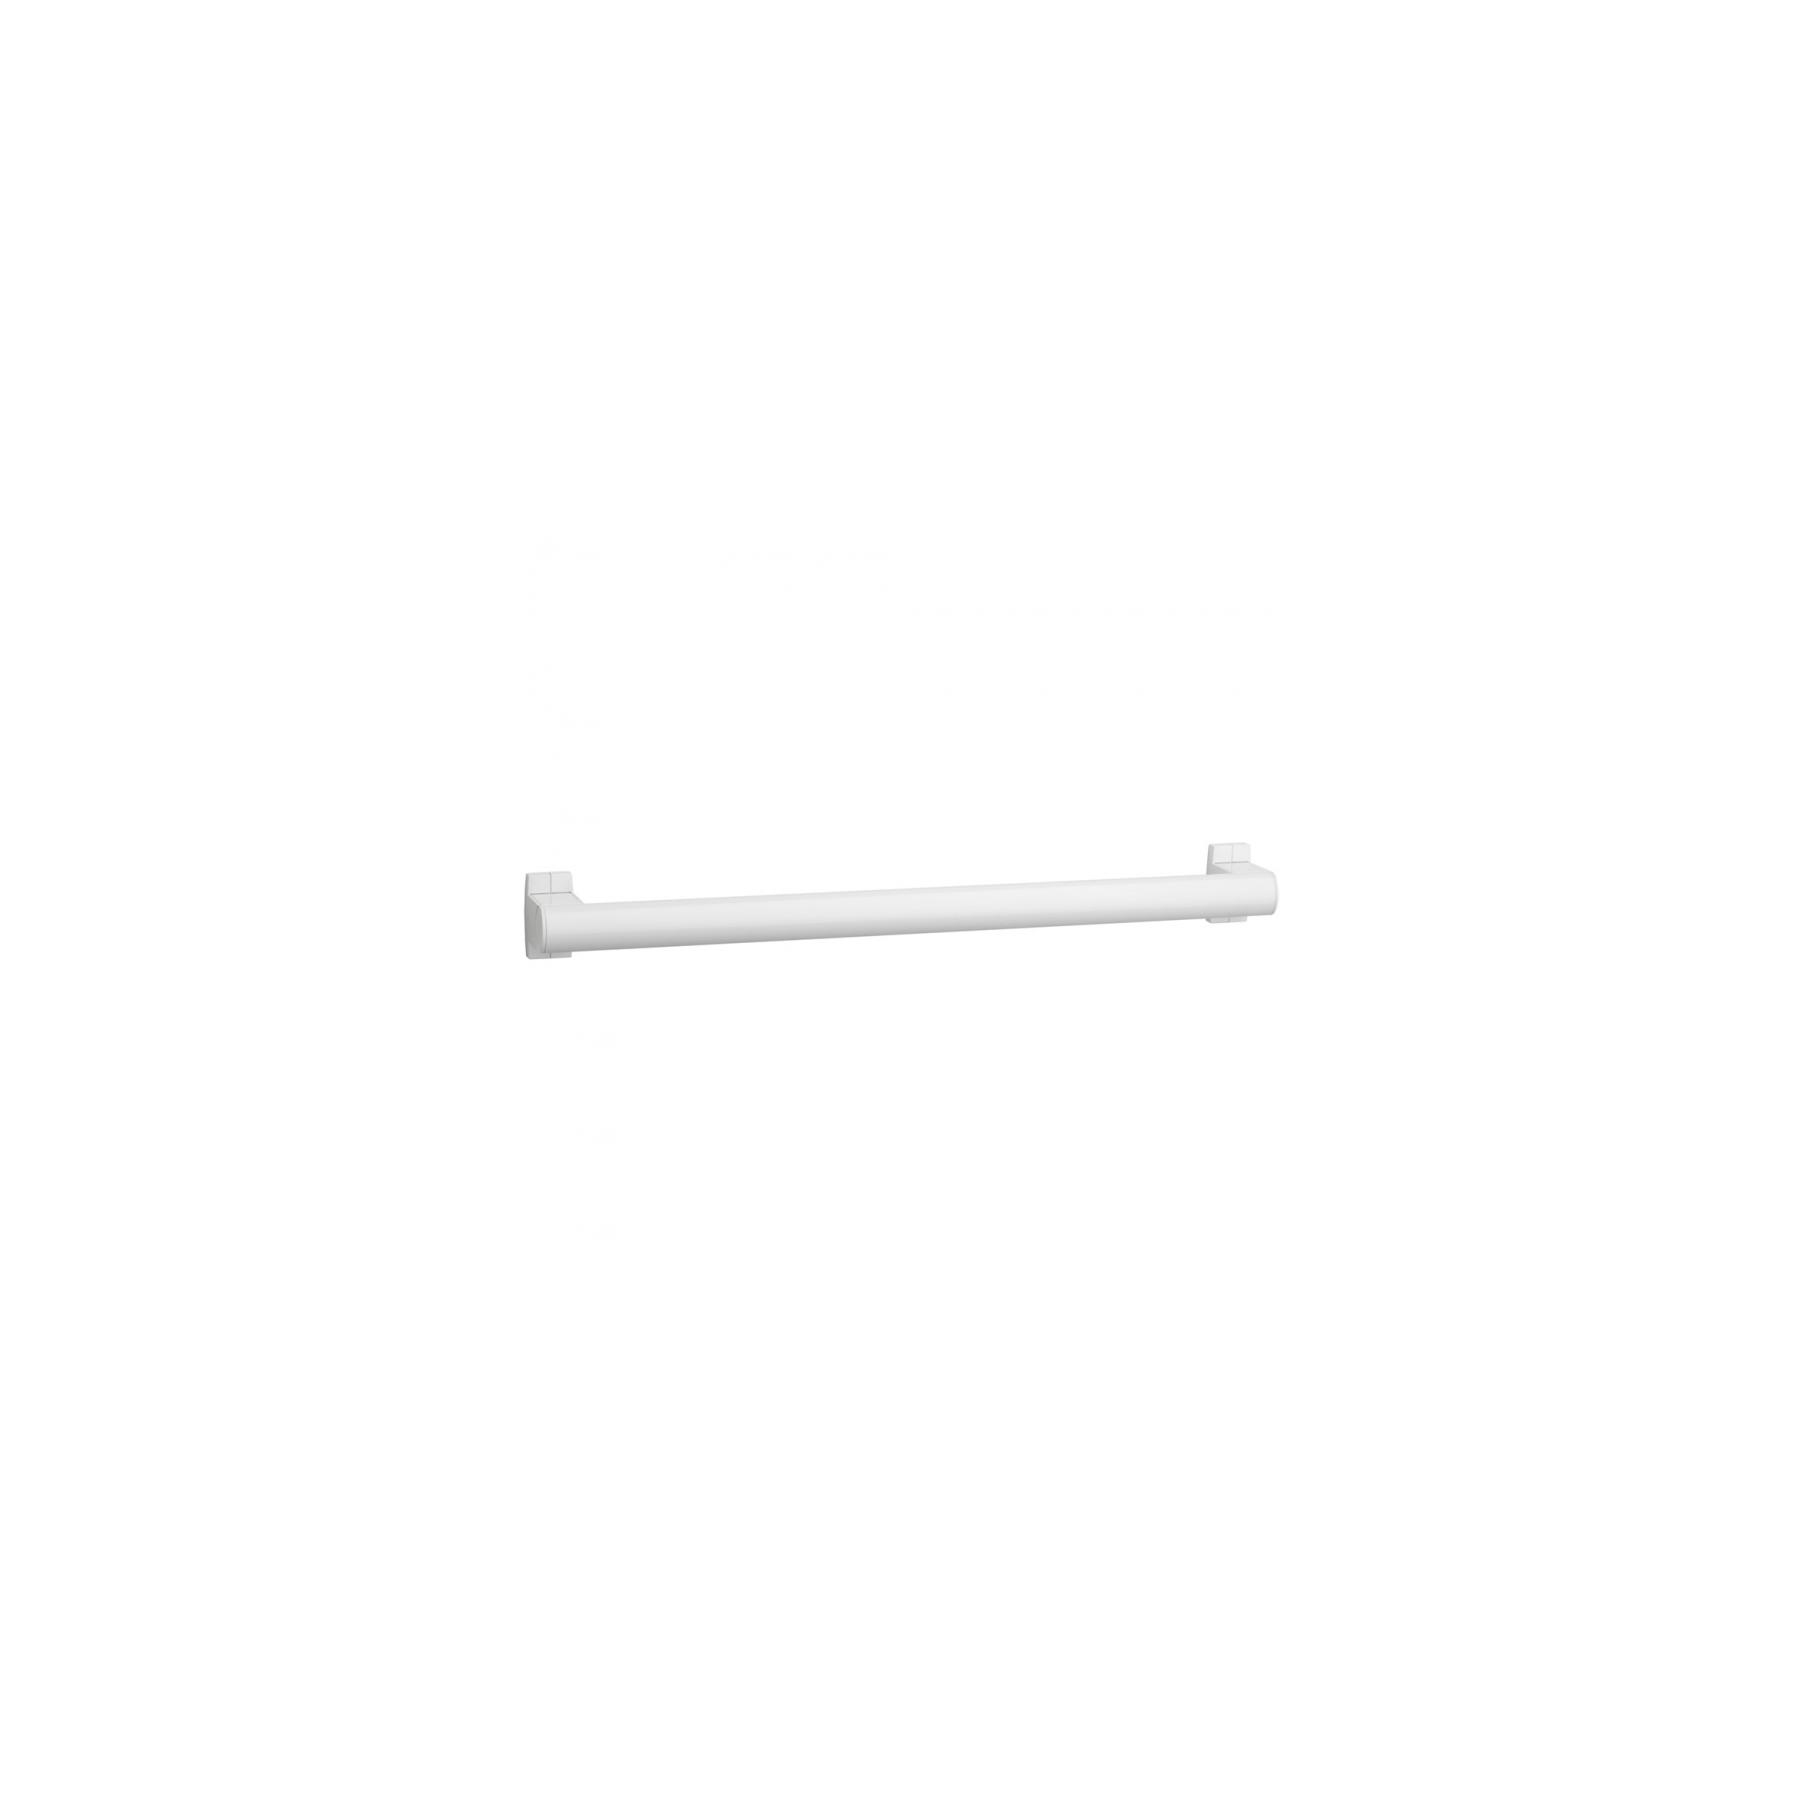 Barre PMR de relèvement droite normes handicapé Gamme PRO PELLET longueur 50cm tube aluminium blanc Ø 38 x 25 mm cache-fixations blanc